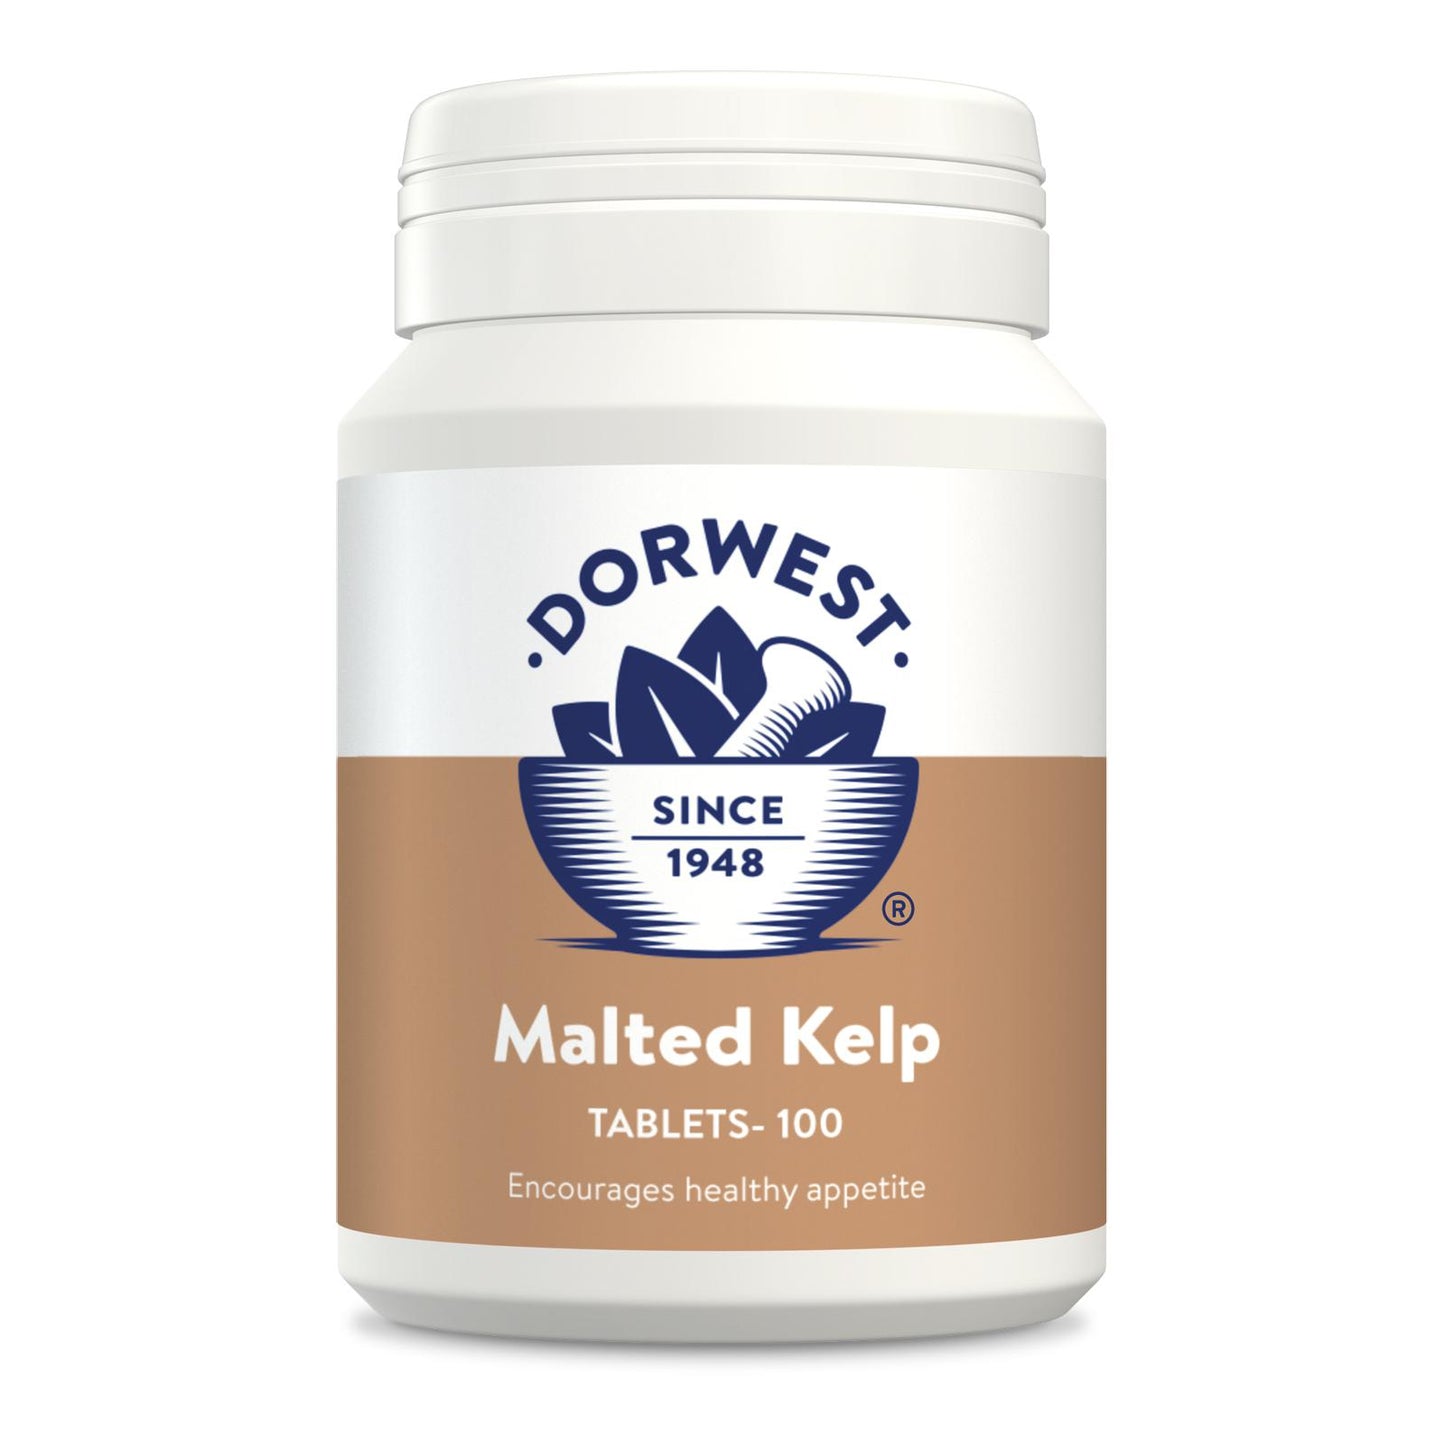 Dorwest - Malted Kelp tablets